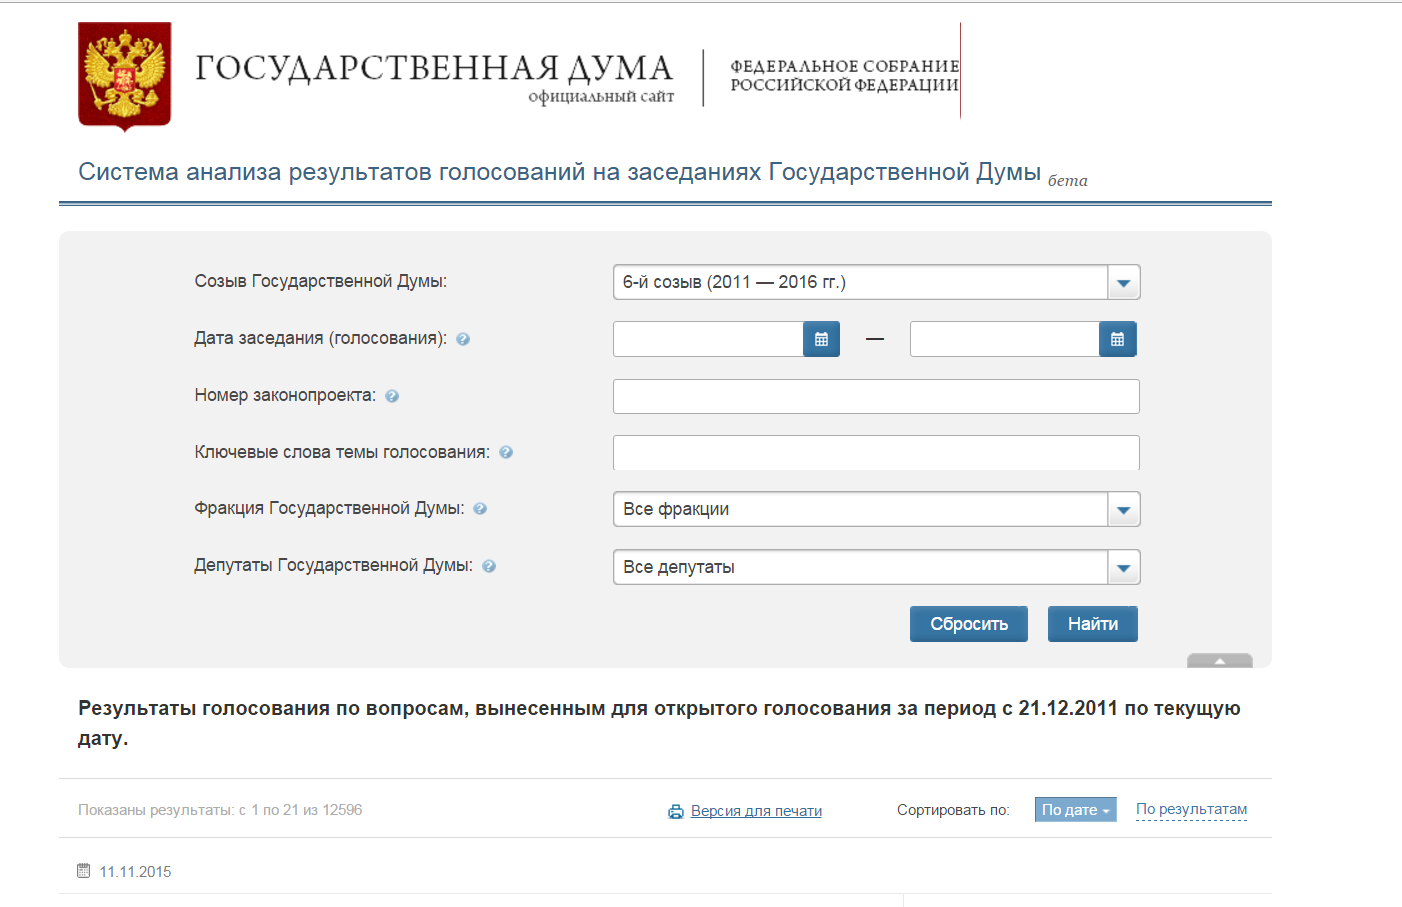 Edg gov ru голосование. Регистрационный номер законопроекта от Госдумы. Http://vote.Duma.gov.ru/vote/117112.